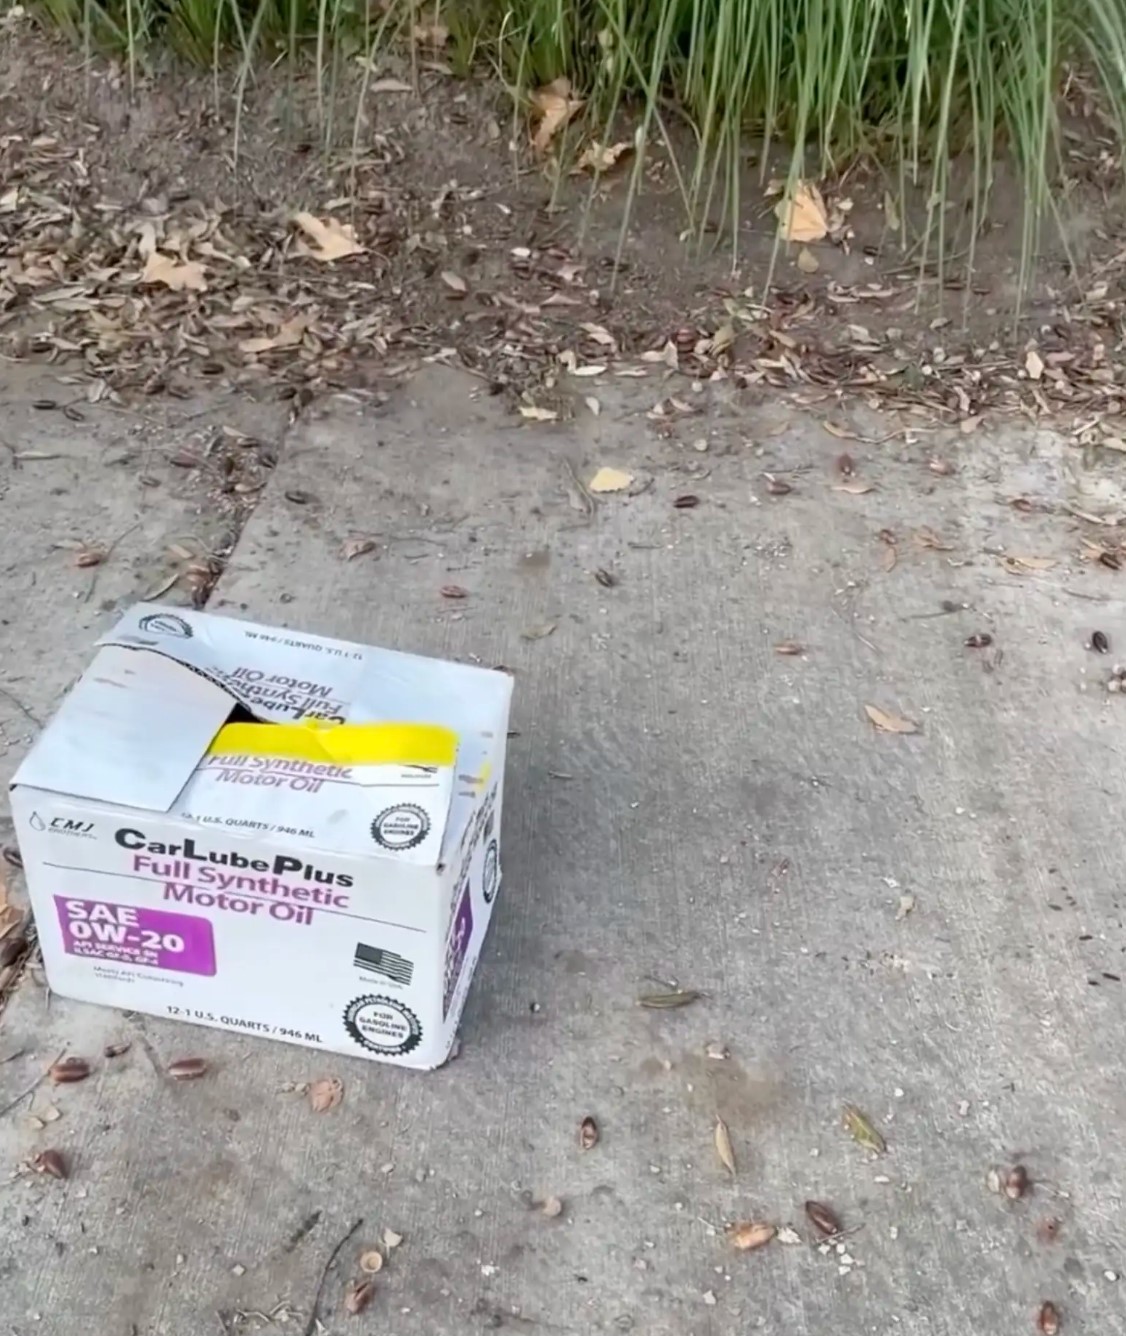 mystery box on the sidewalk